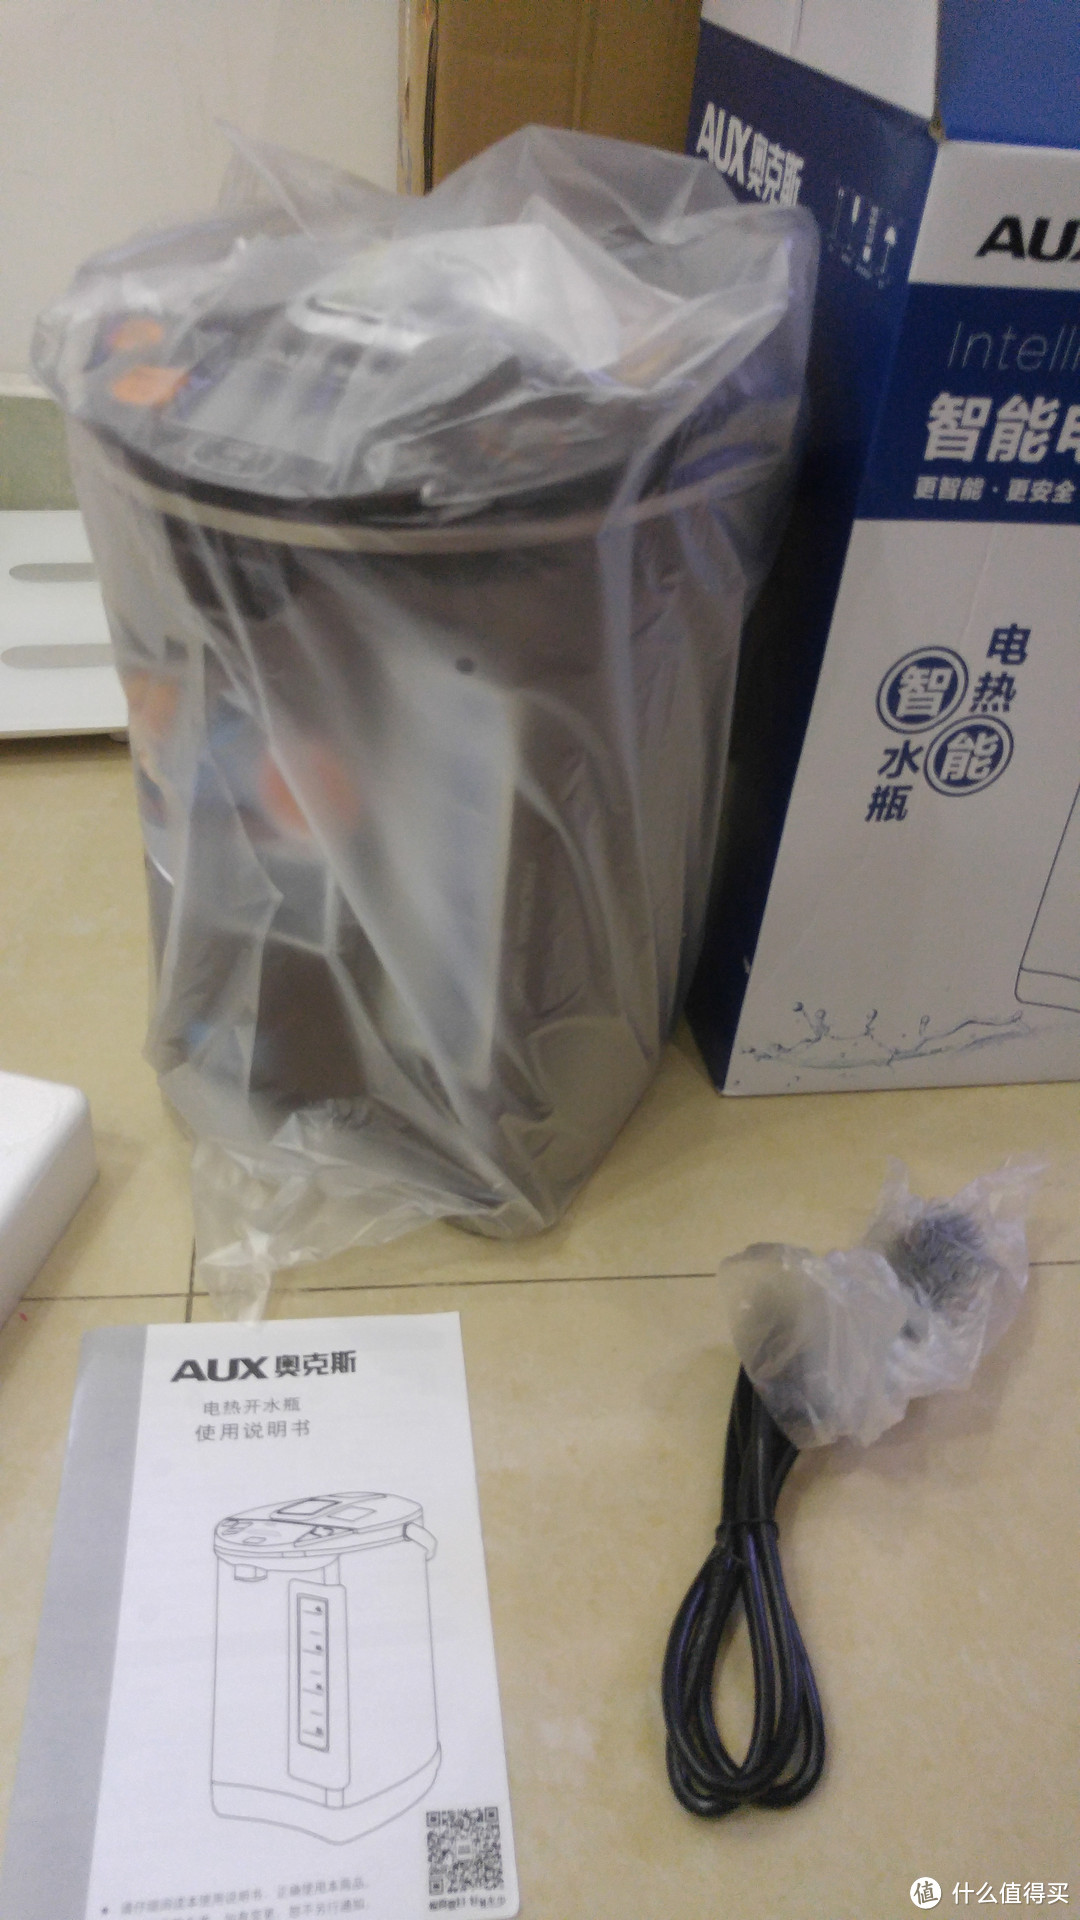 AUX 奥克斯 HX-8066 电热水壶与 Joyoung 九阳 电热水壶 简易对比